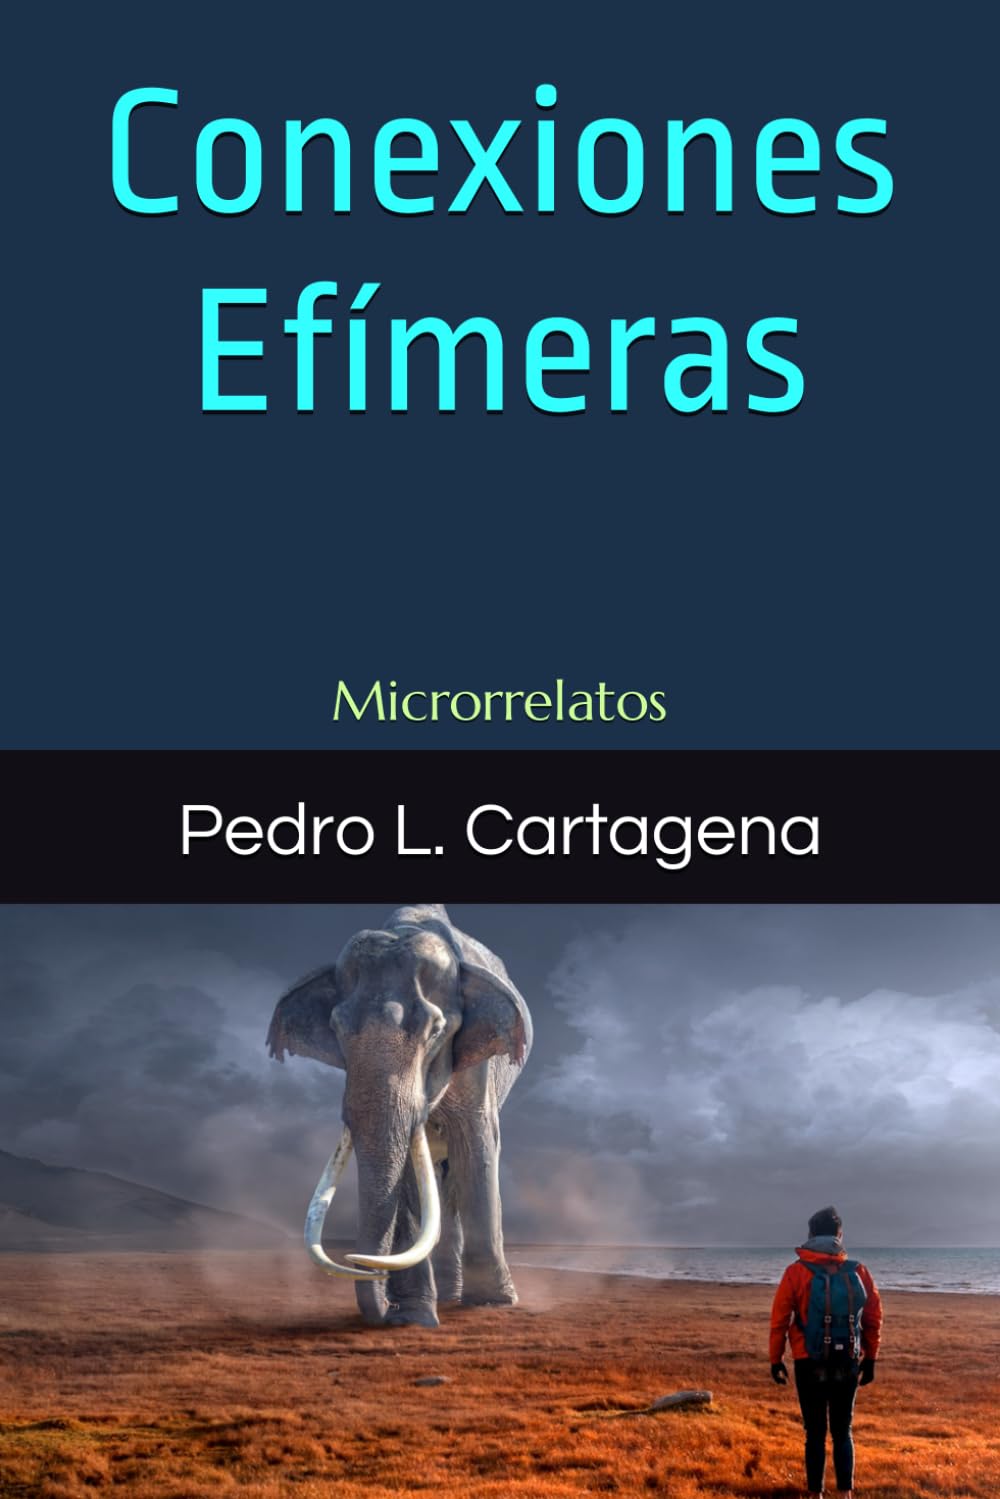 Pedro L. Cartagena publica "Microrrelatos para un mundo nuevo"